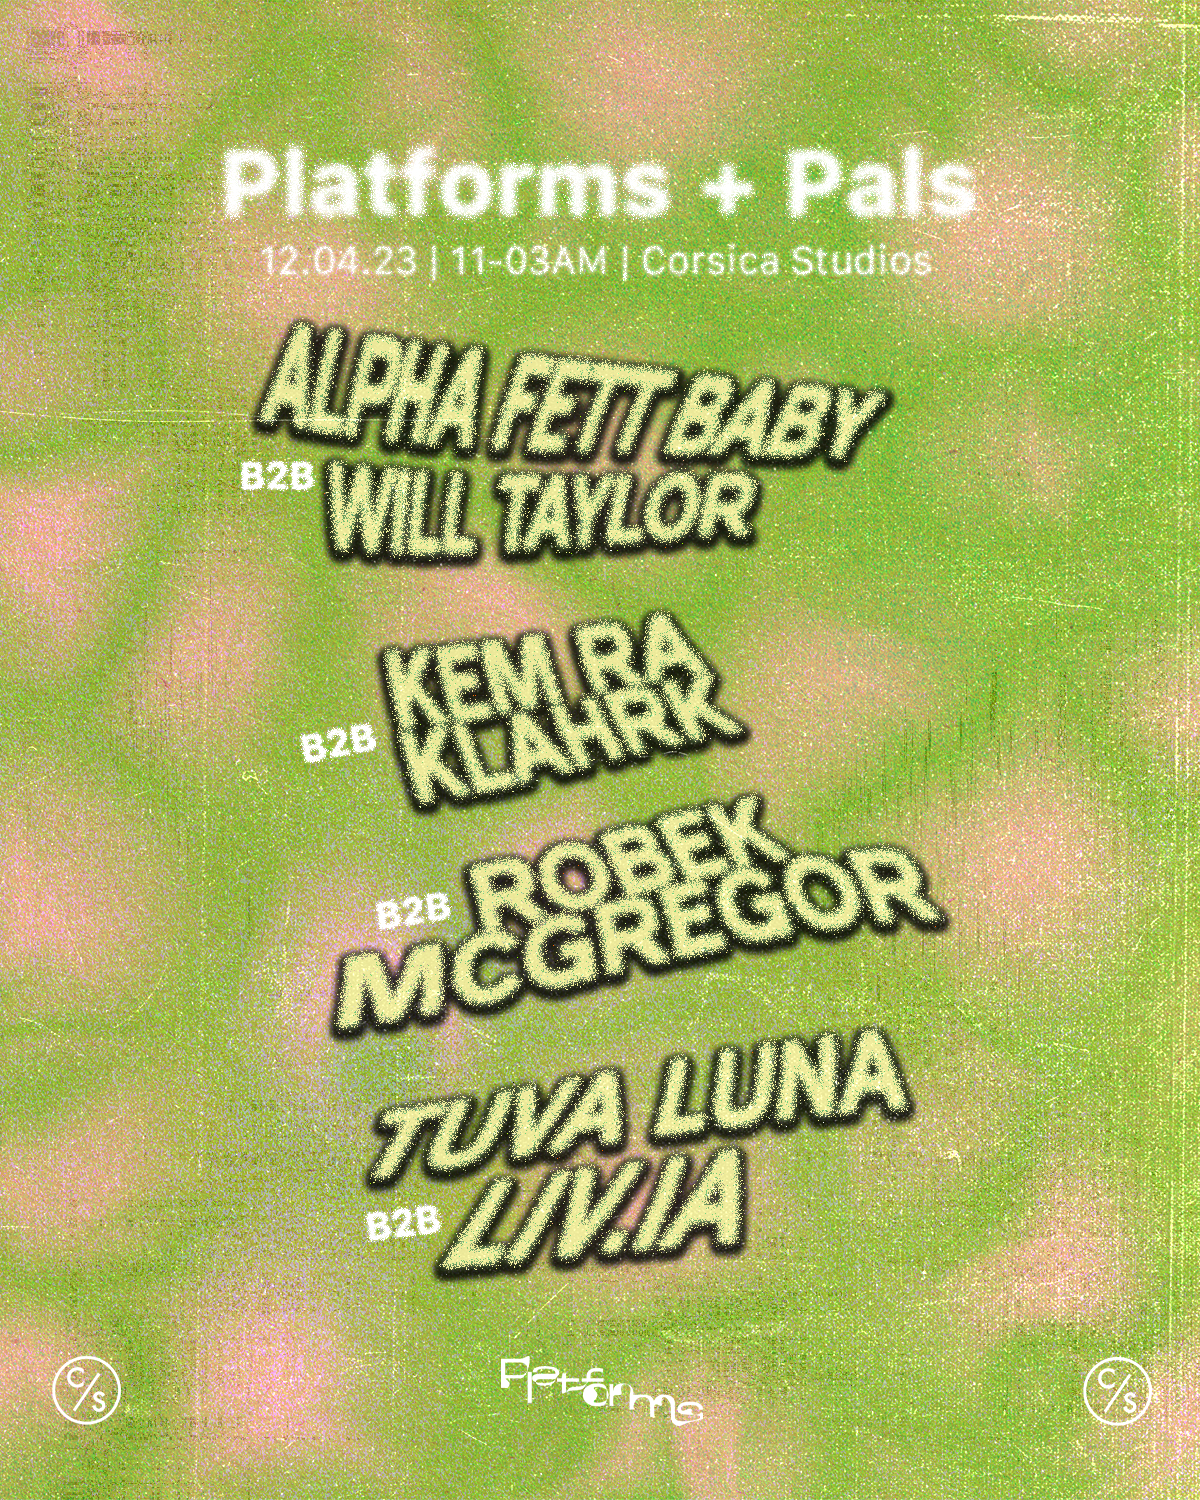 Platforms + Pals - フライヤー裏